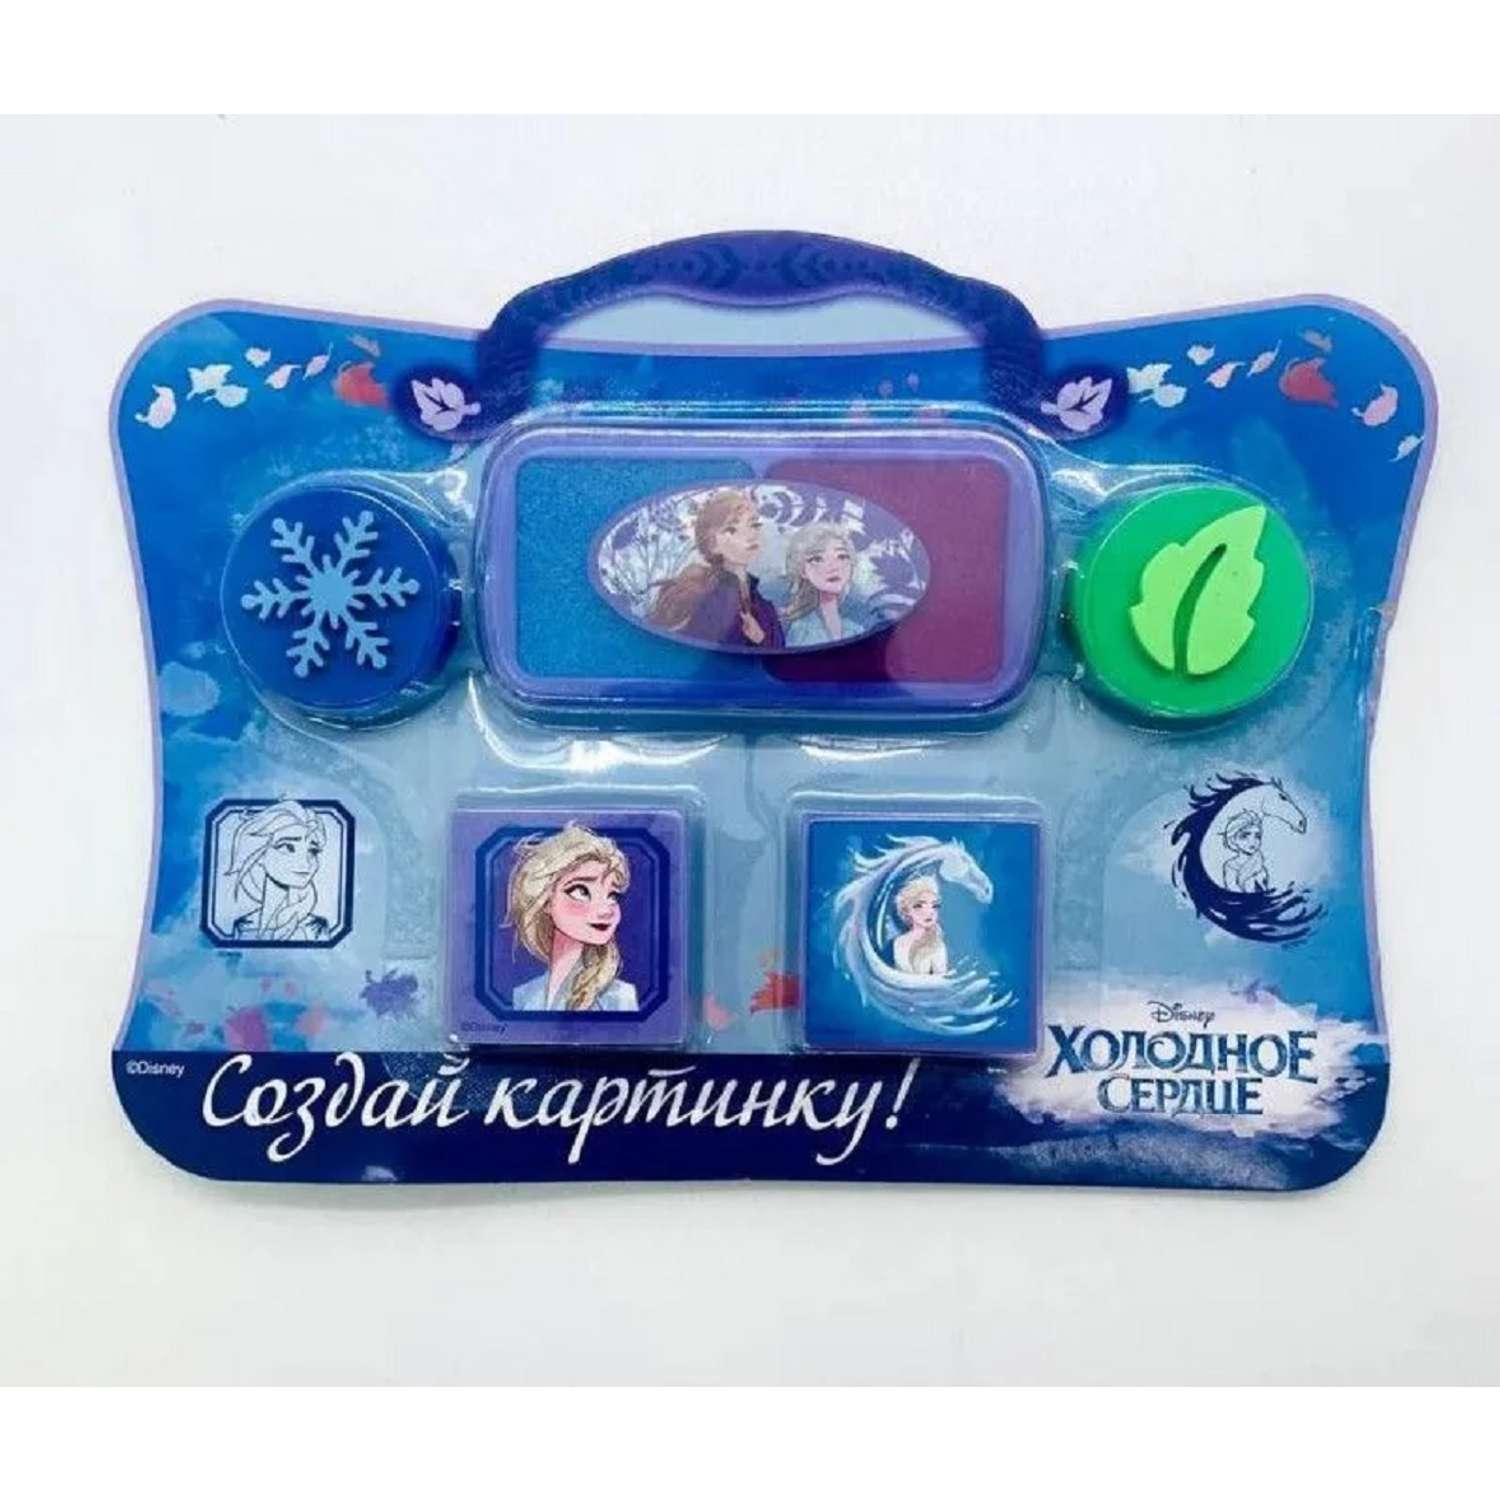 Журналы Disney Frozen Комплект 5 шт для детей Холодное cердце - фото 7